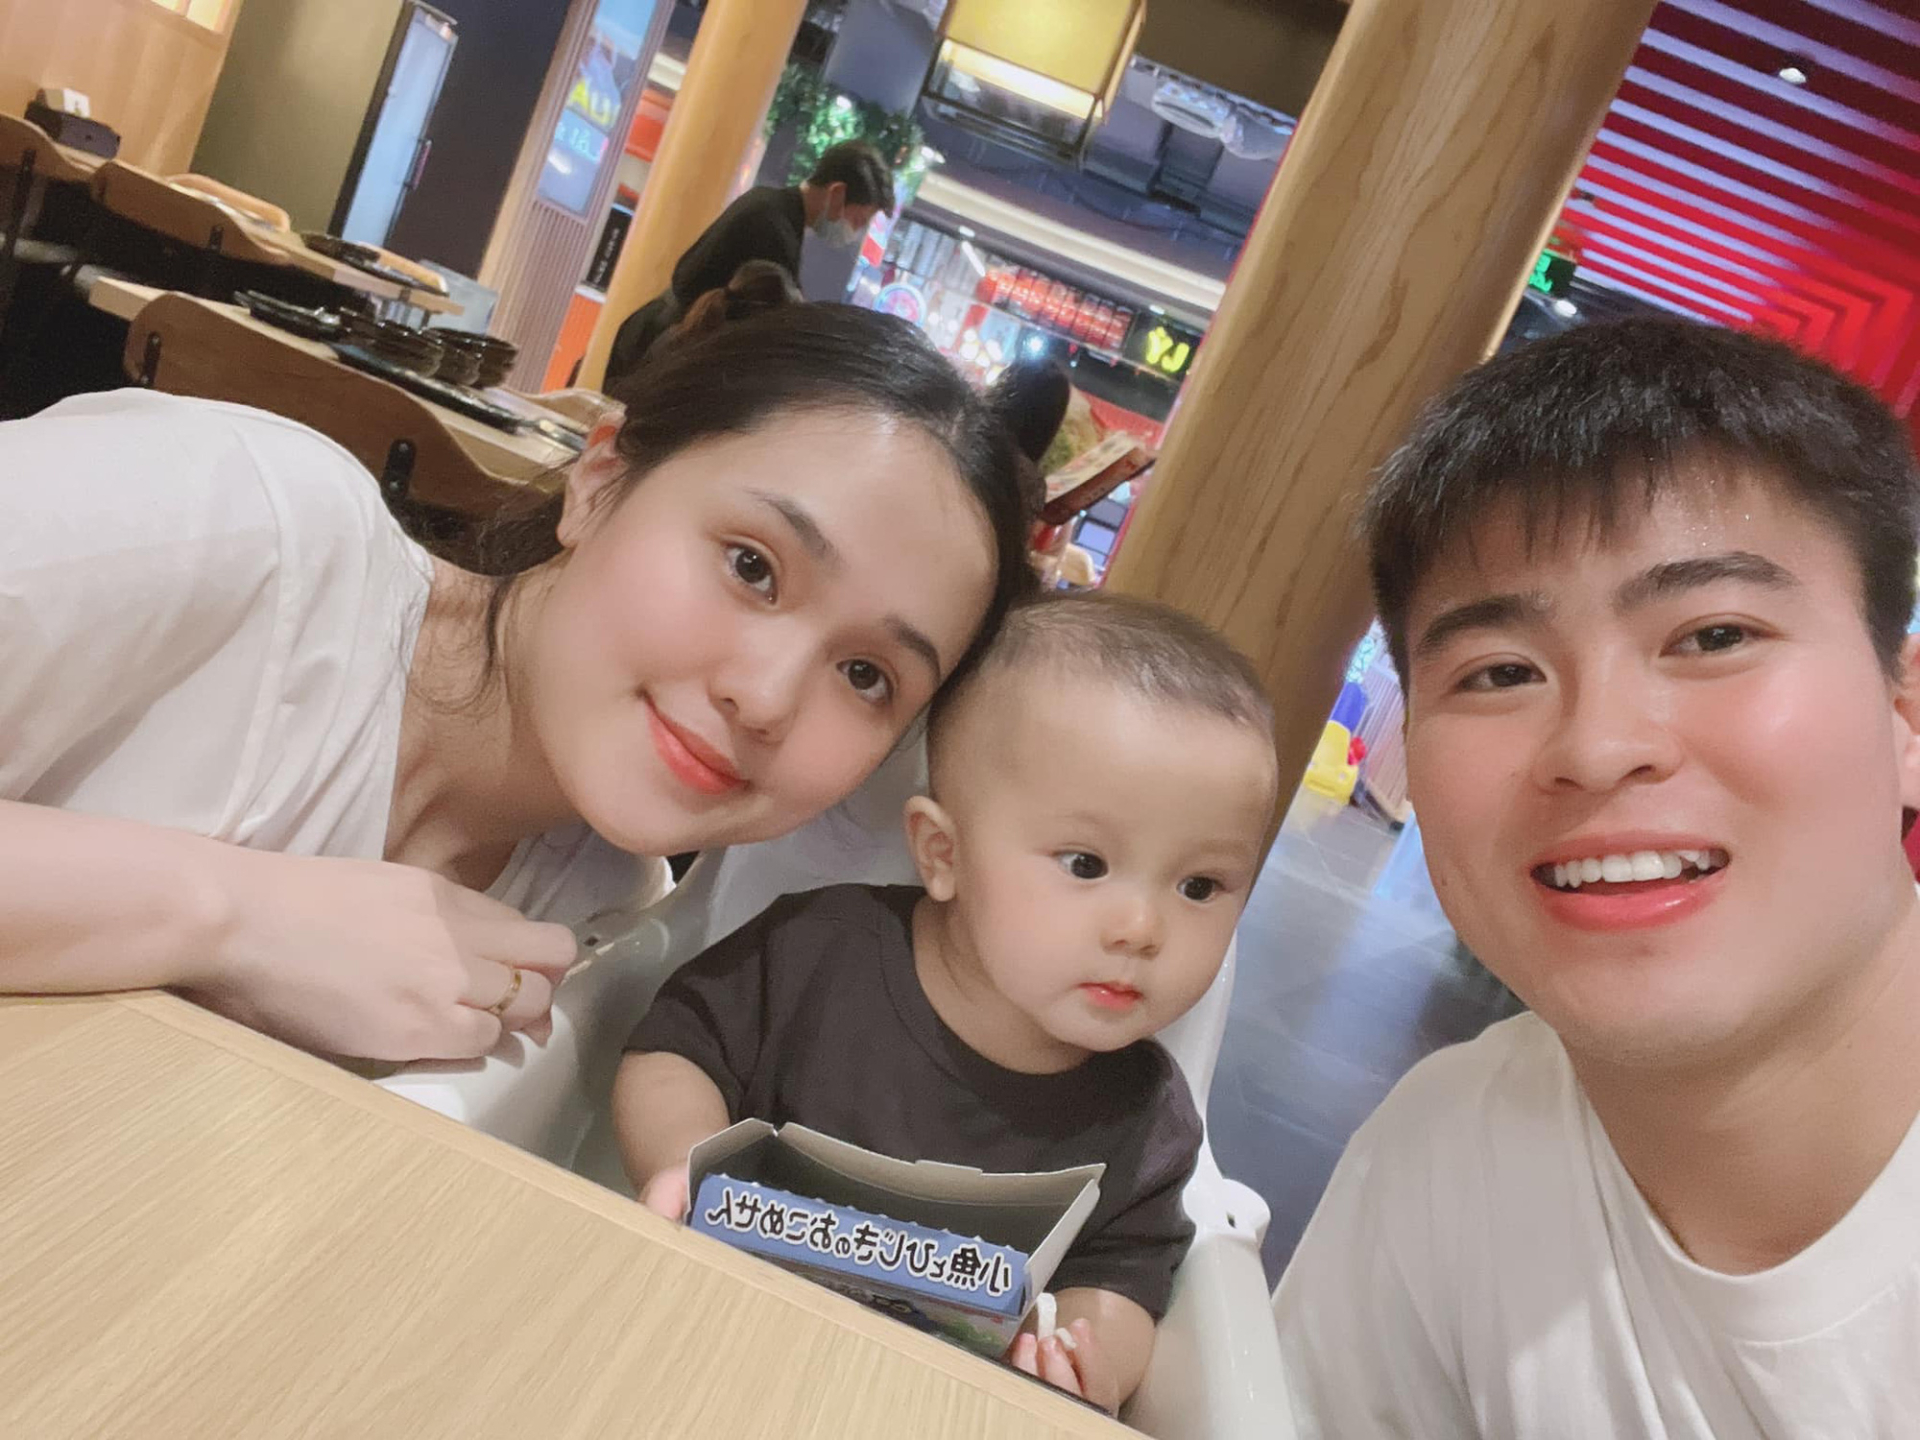 Con trai 4 tuổi của Duy Mạnh nhập viện, netizen nghi mắc chứng bệnh hiếm qua động thái lạ của bố - ảnh 5